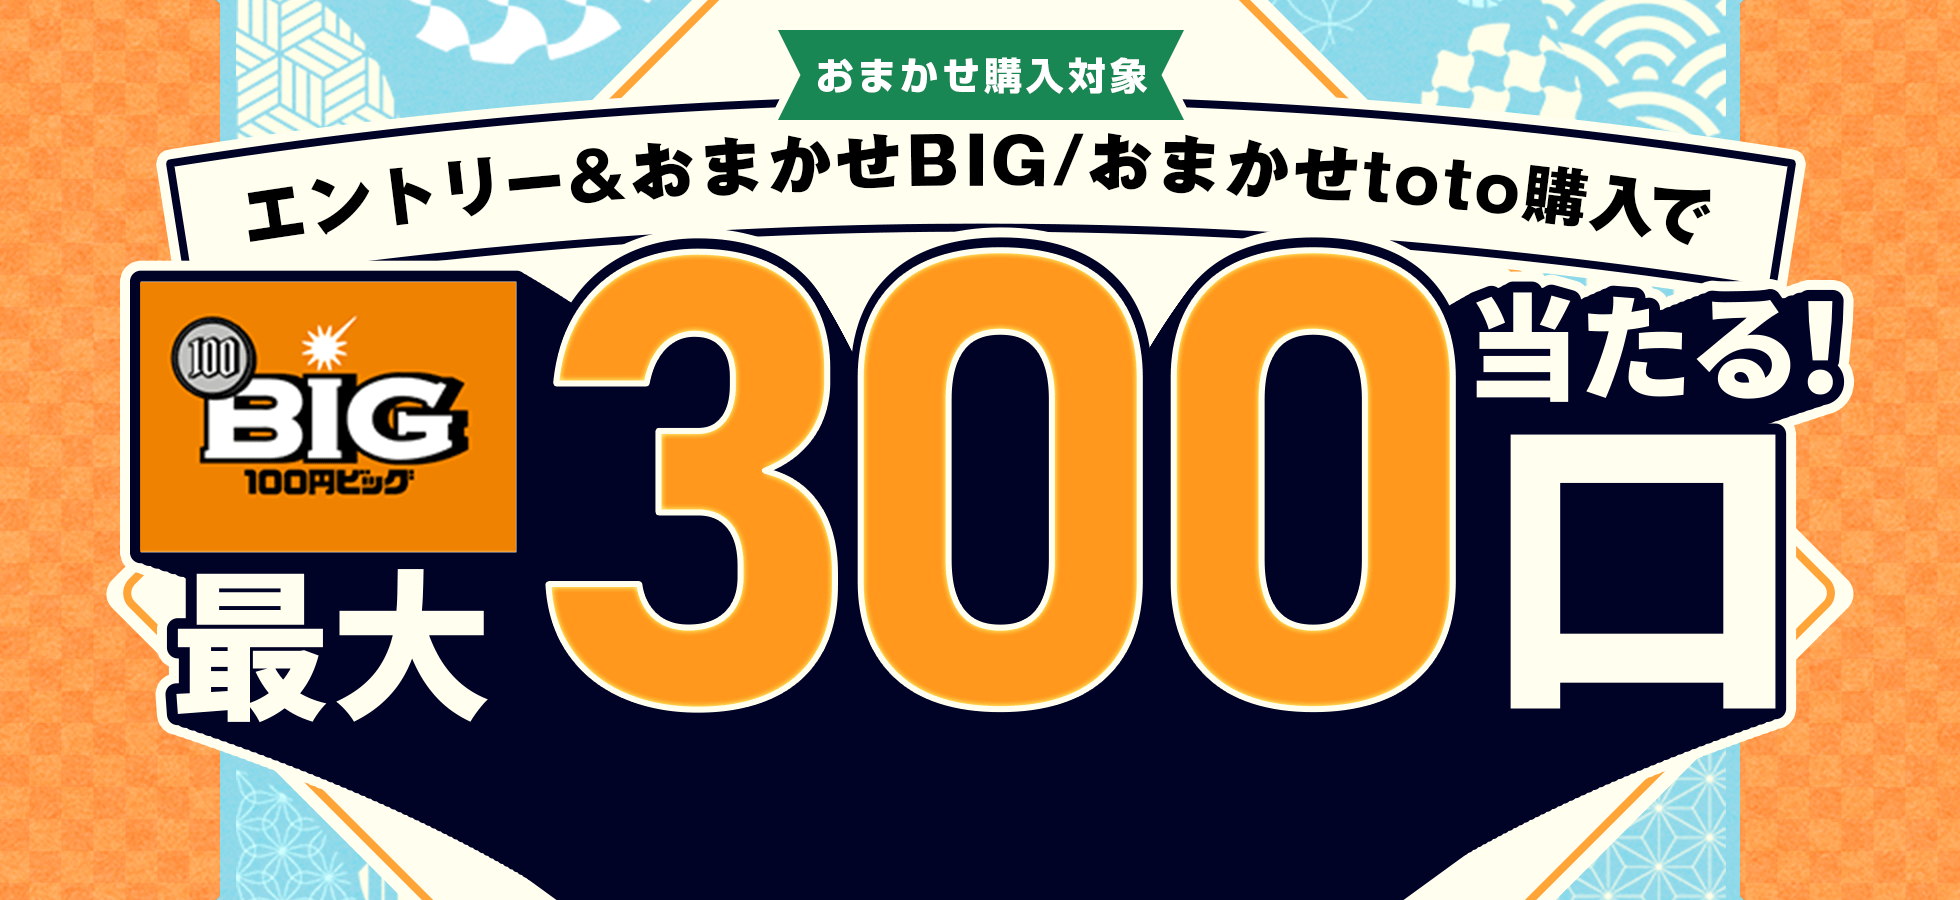 楽天toto】エントリー＆「おまかせBIG」「おまかせtoto」購入で100円 